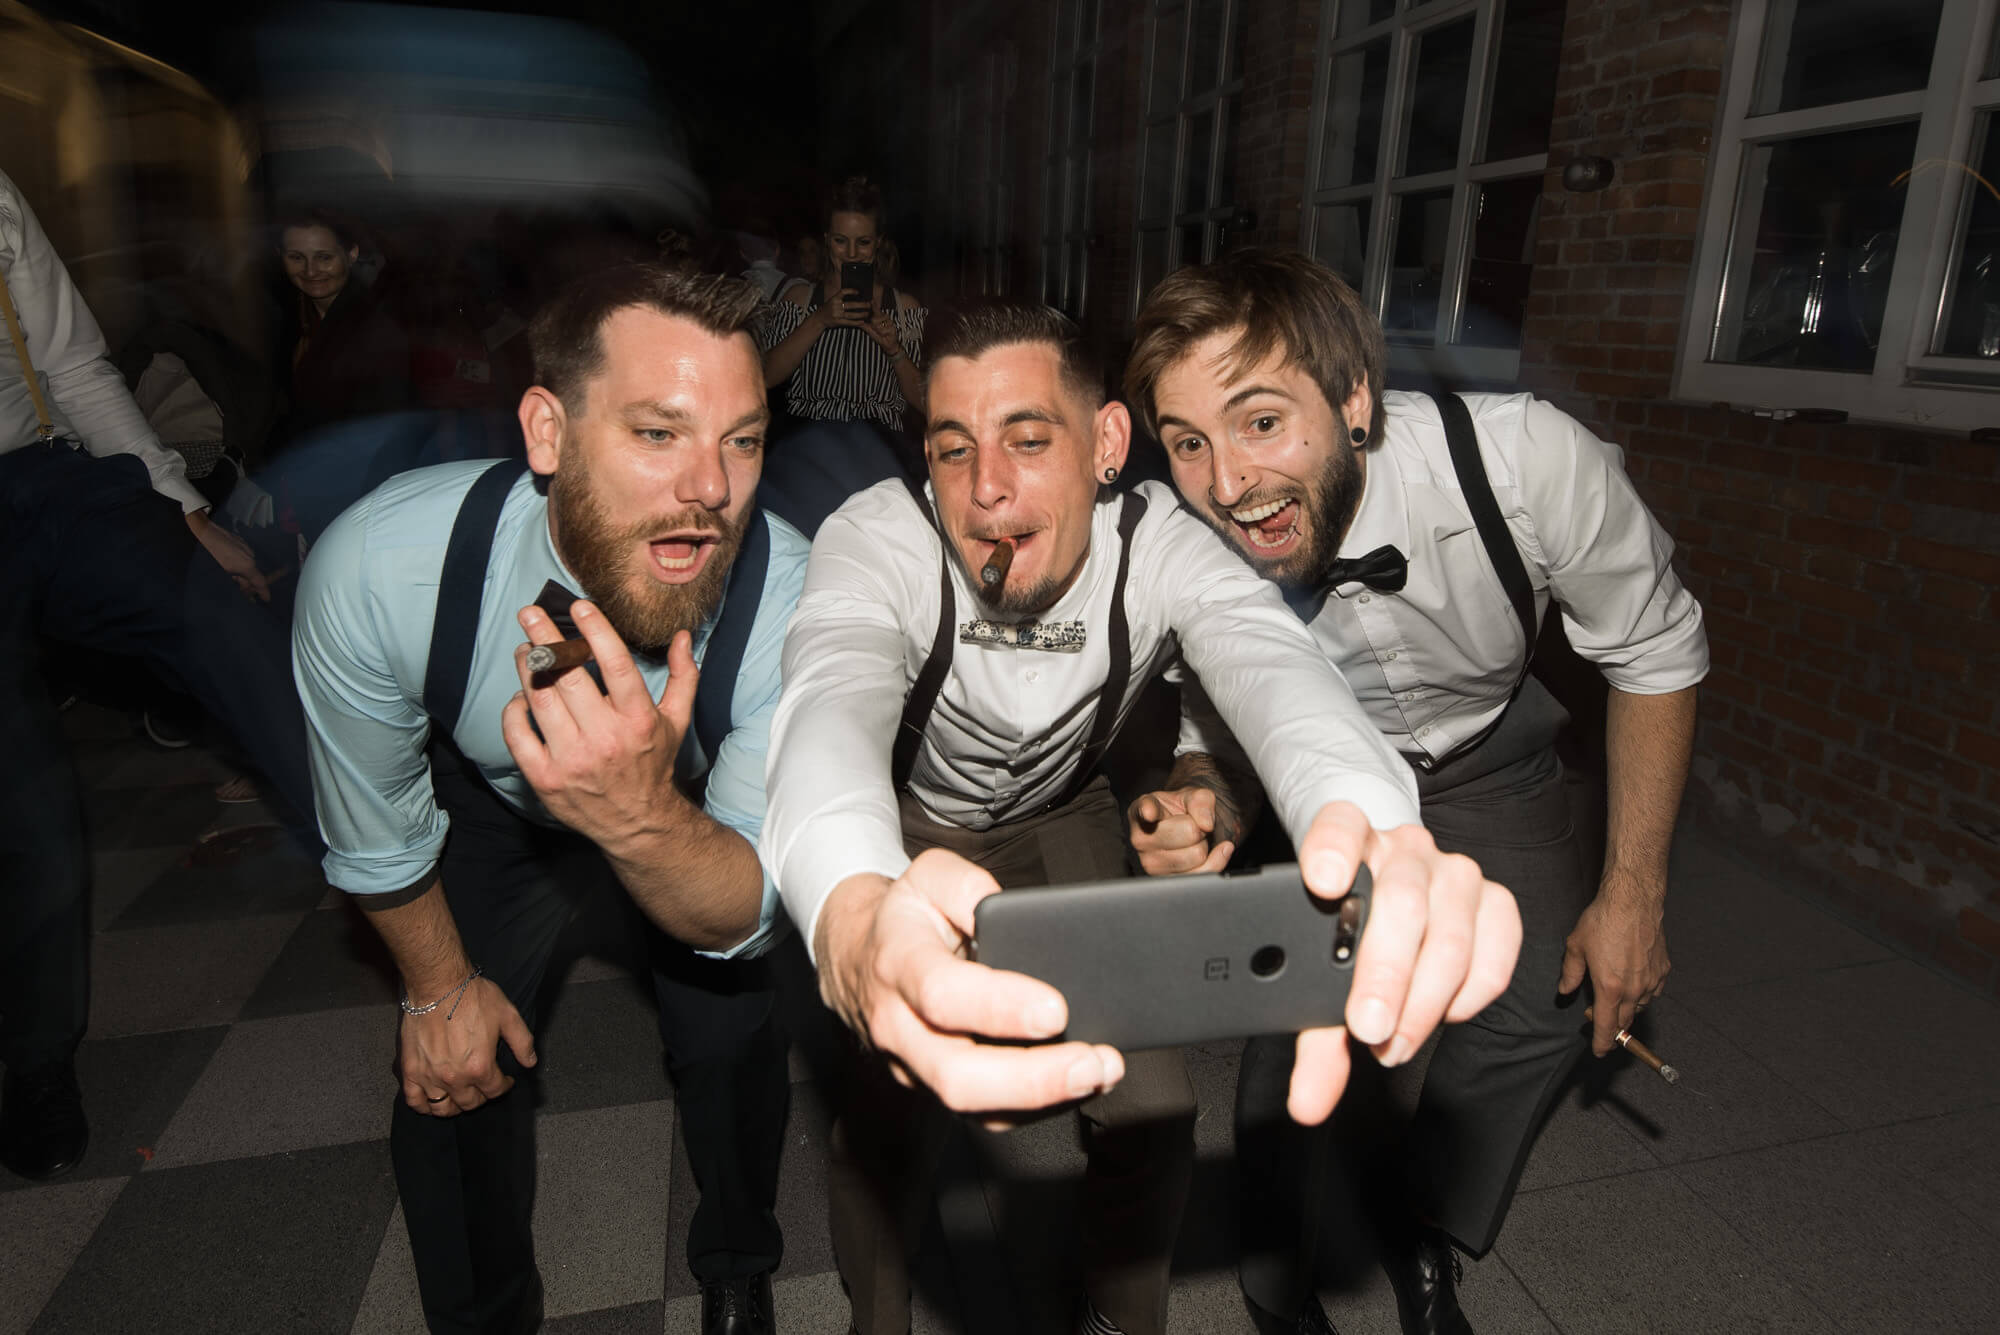 Männer auf Hochzeit machen Selfie von sich mit Zigarre bei Hochzeitsparty in Ludwigsburg